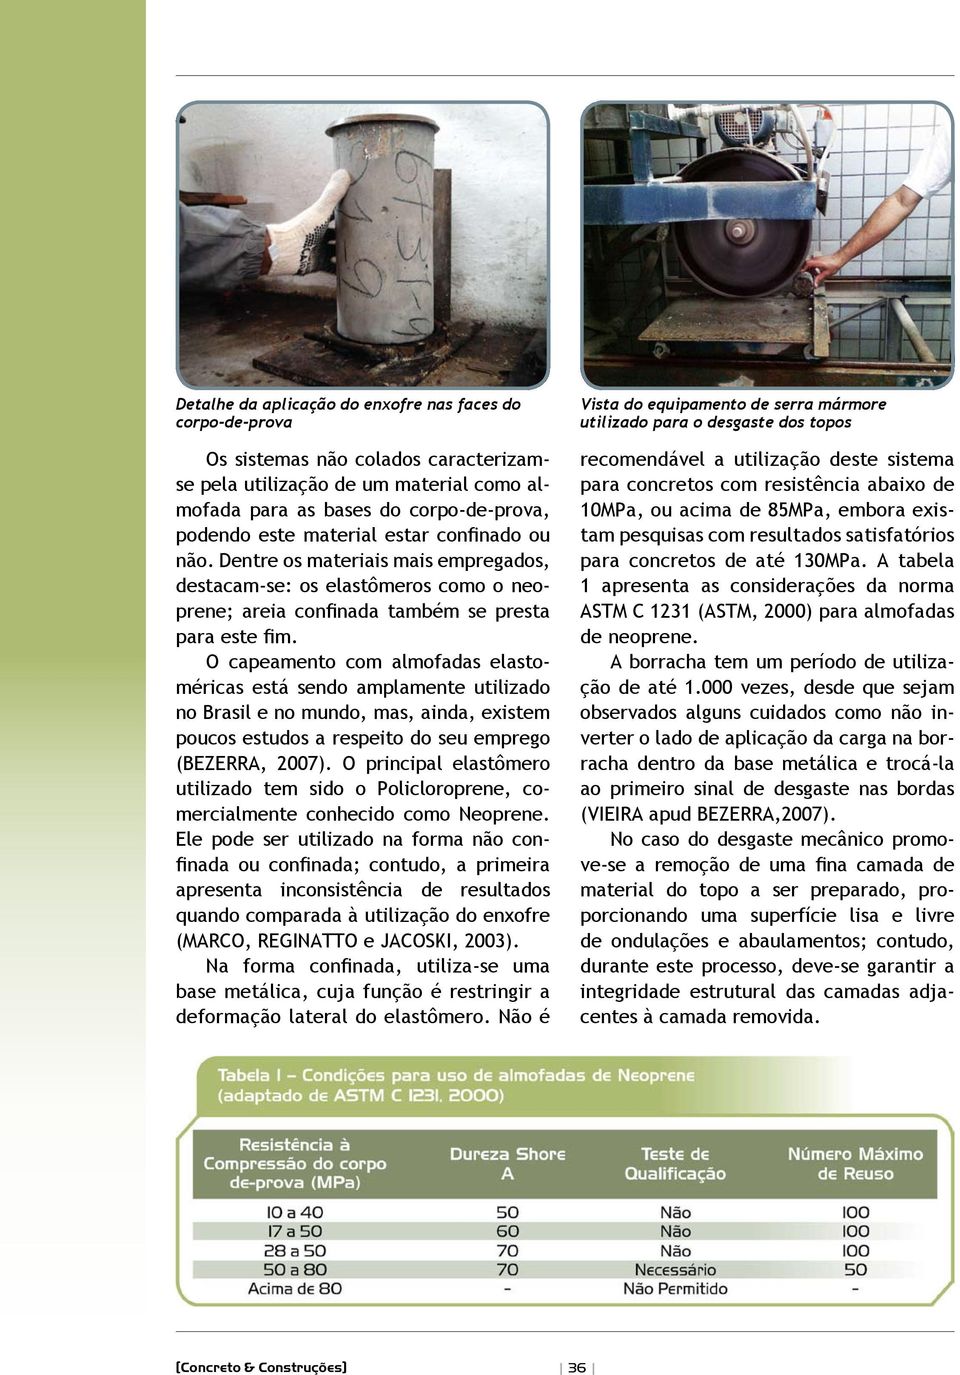 O capeamento com almofadas elastoméricas está sendo amplamente utilizado no Brasil e no mundo, mas, ainda, existem poucos estudos a respeito do seu emprego (BEZERRA, 2007).